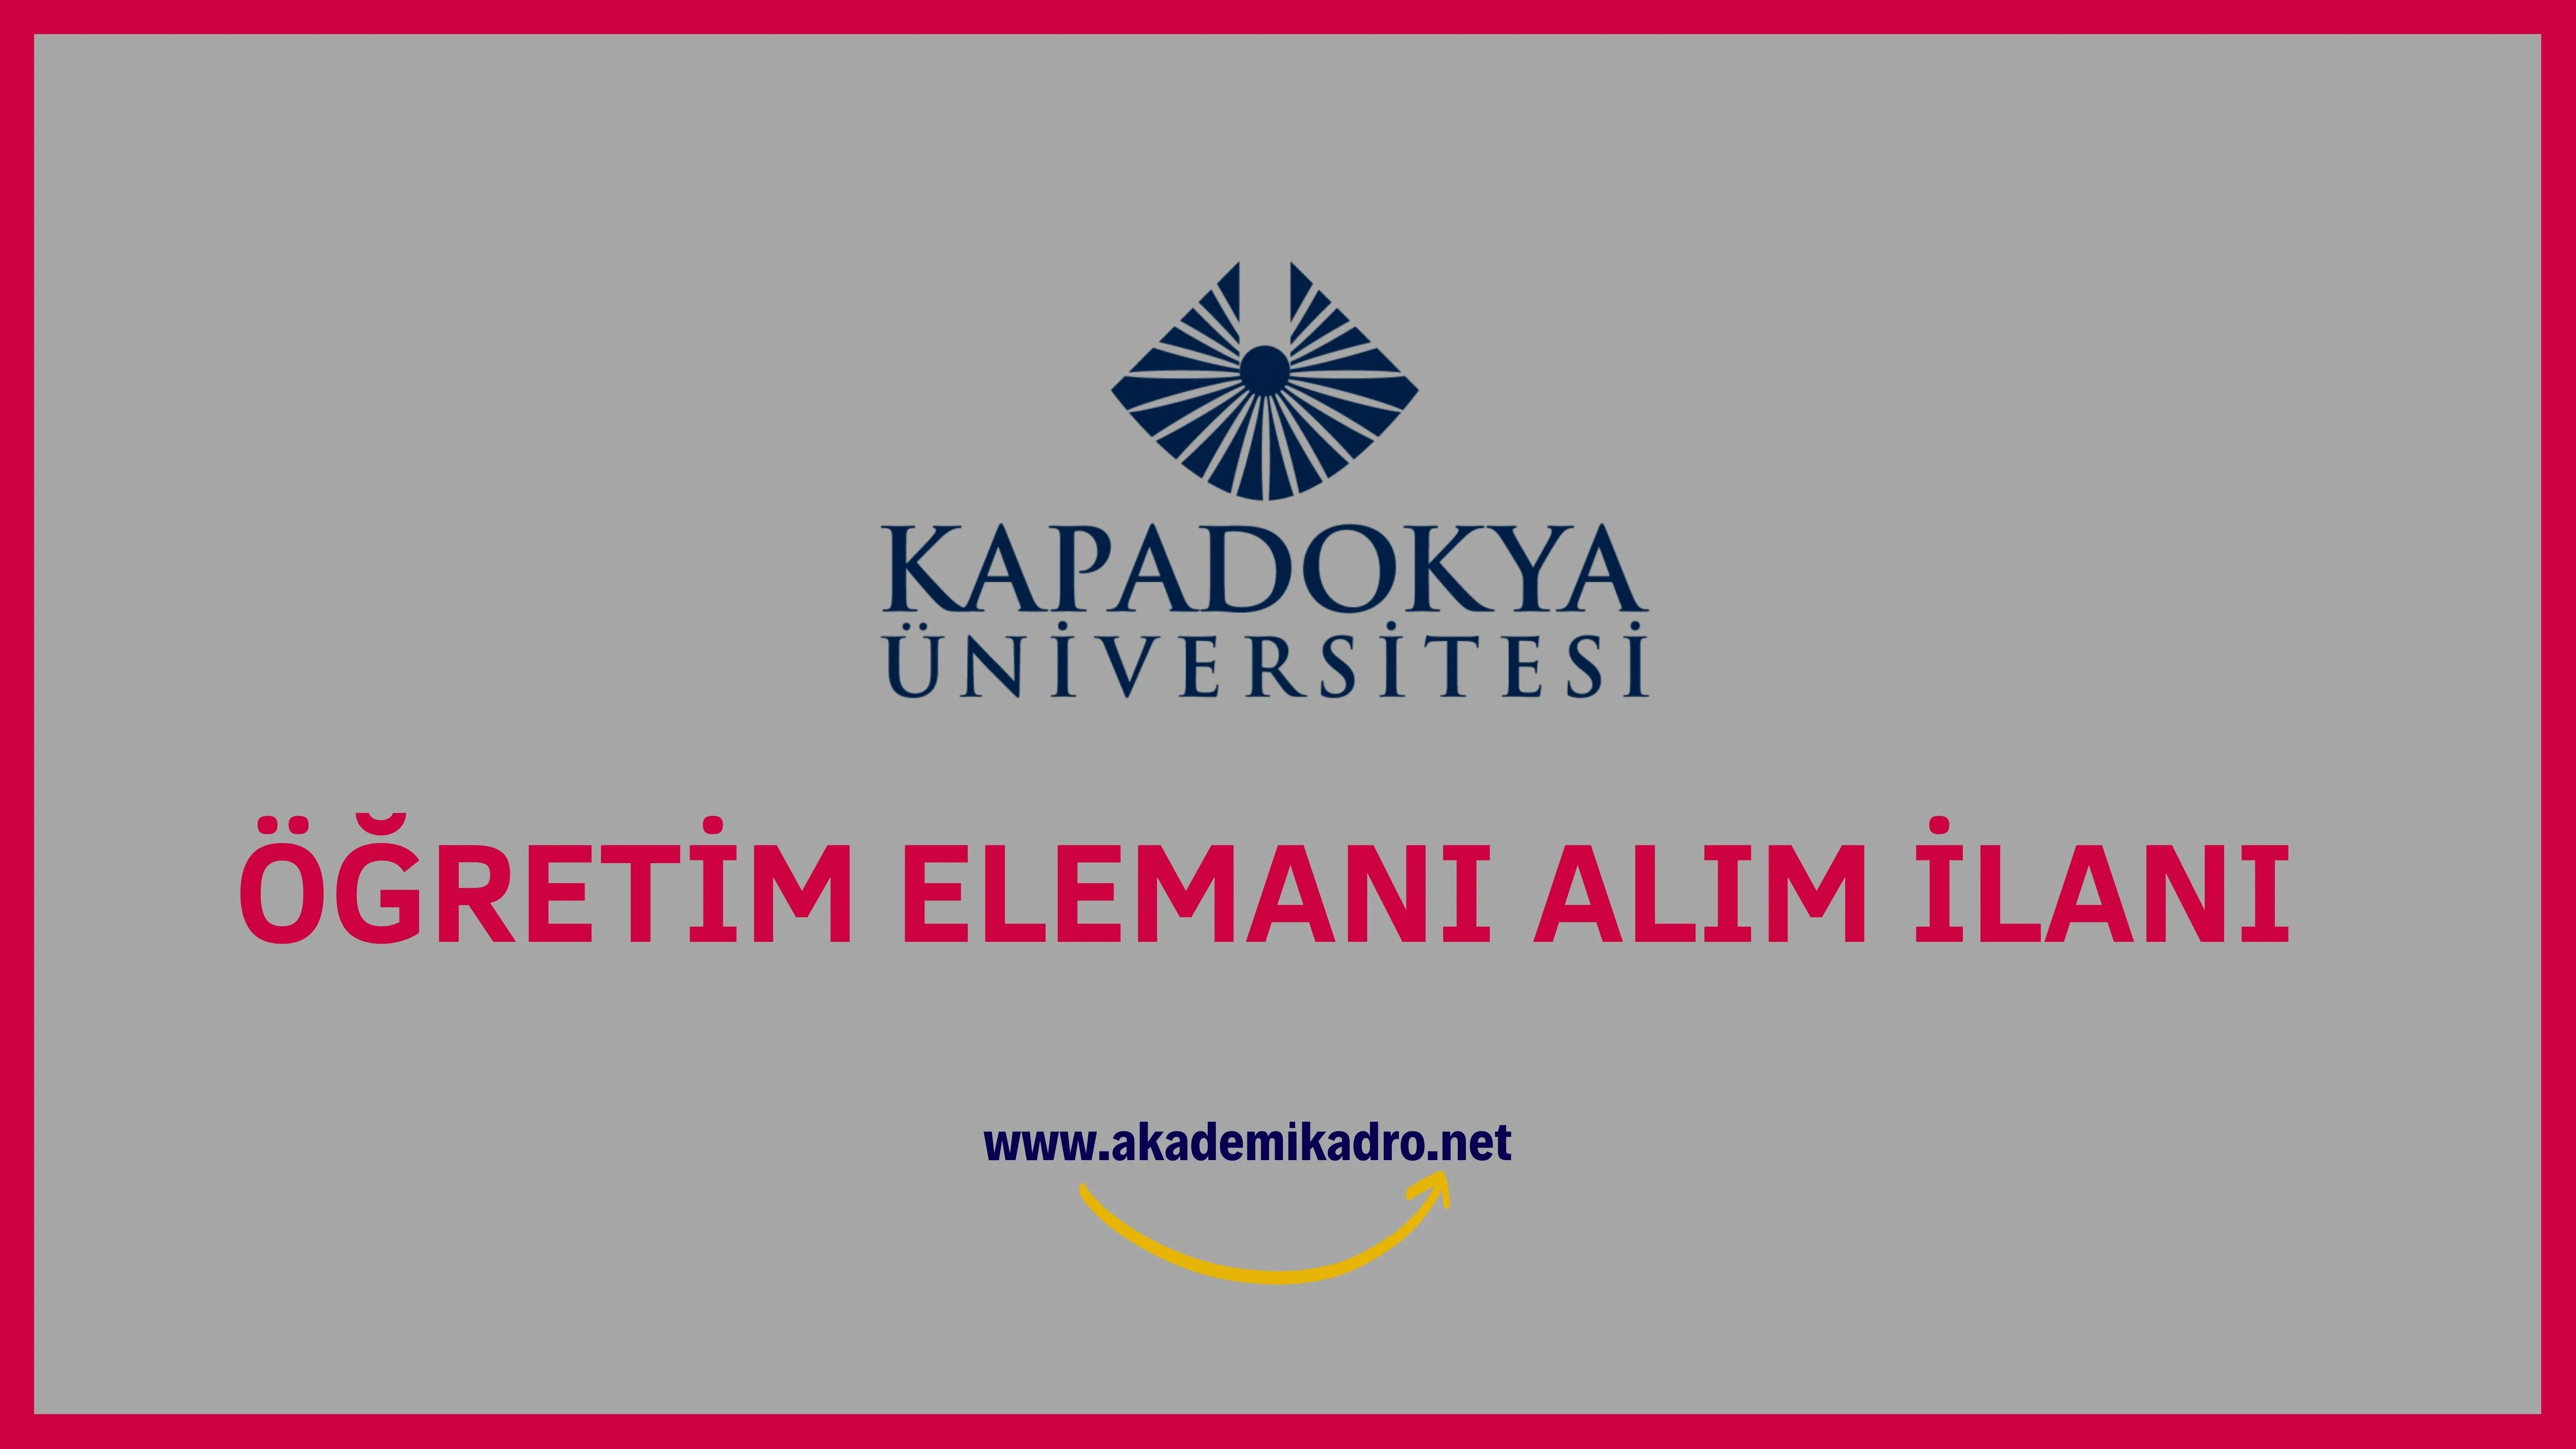 Kapadokya Üniversitesi 7 Öğretim Görevlisi, 2 Araştırma görevlisi ve 5 Öğretim üyesi alacak.